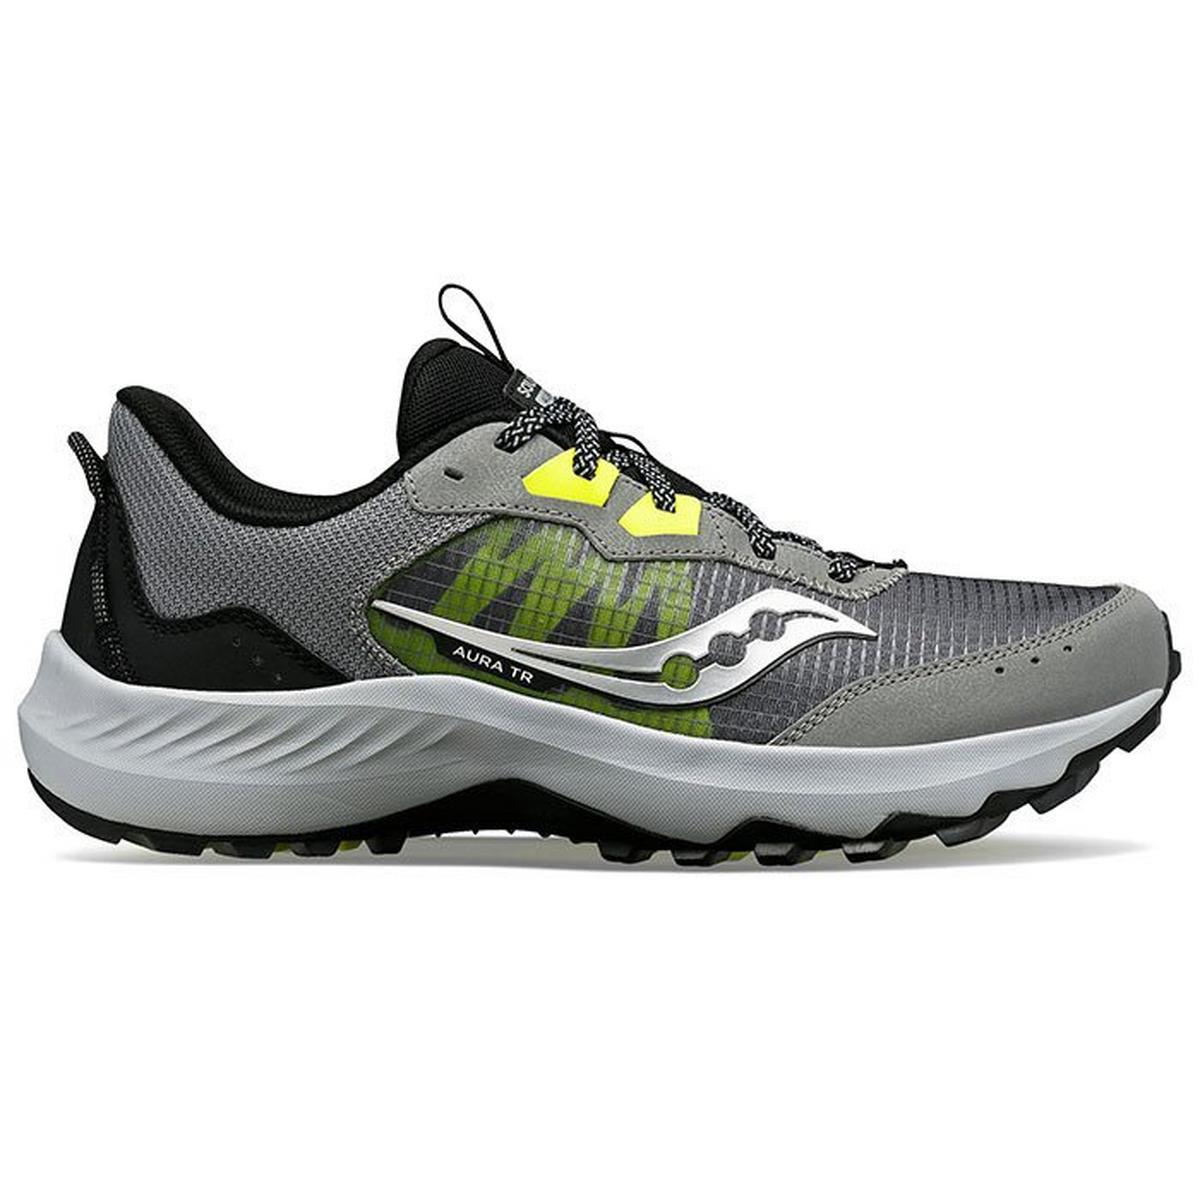 Men's Aura TR Trail Running Shoe